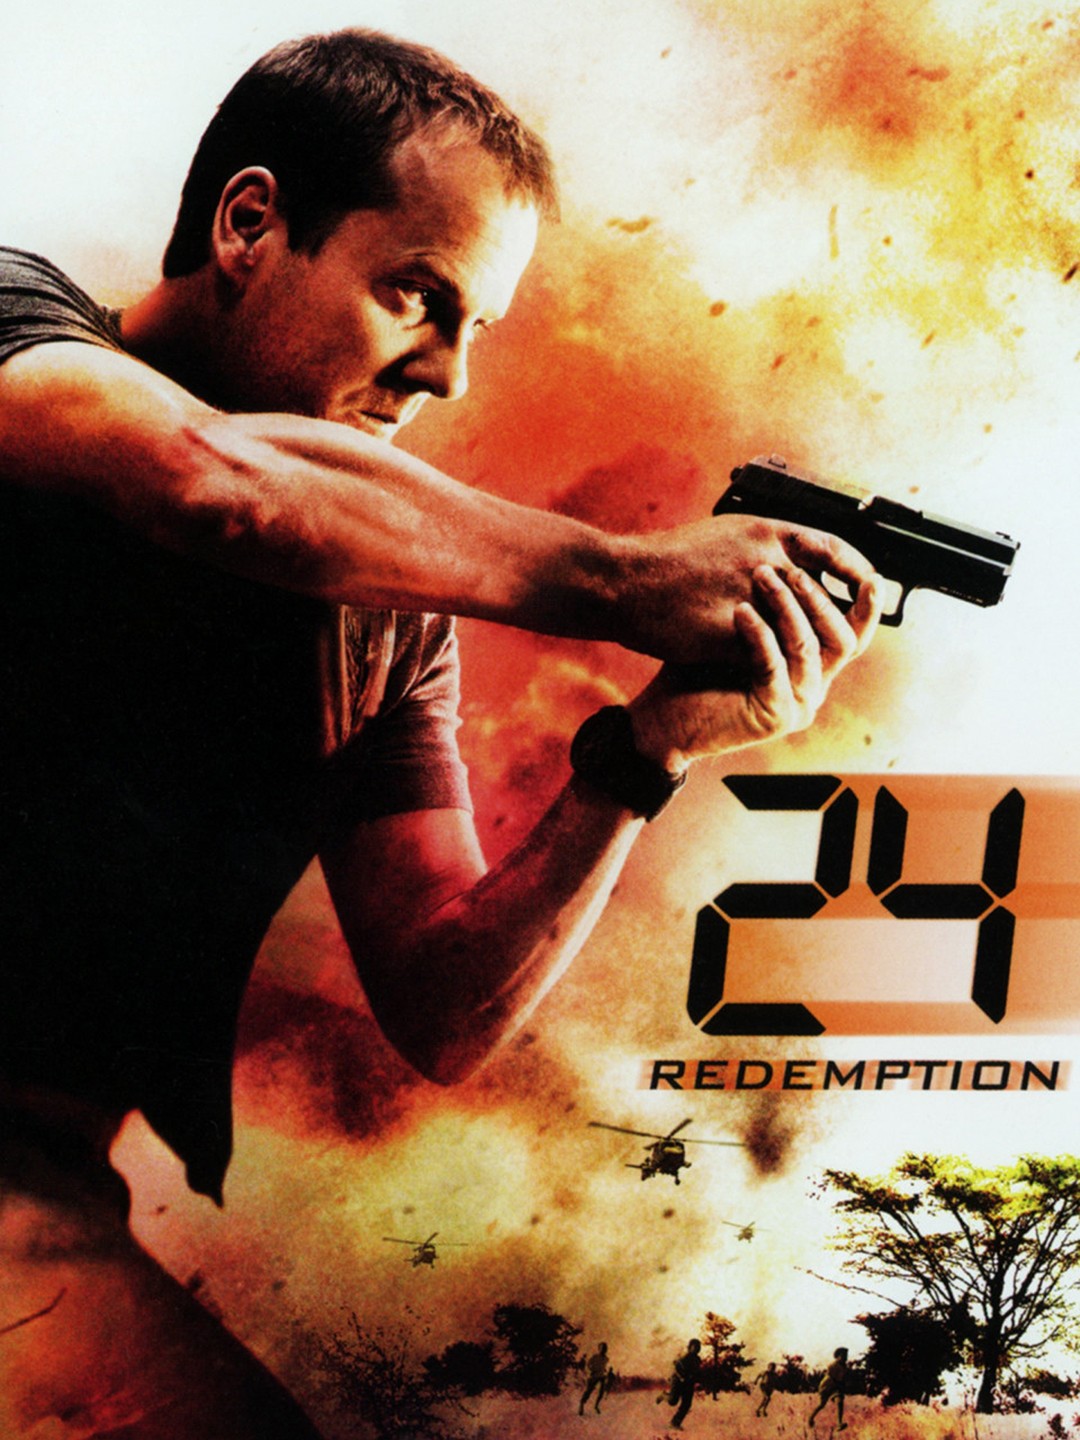 Redemption (2013) Streaming: Watch & Stream Online via Netflix